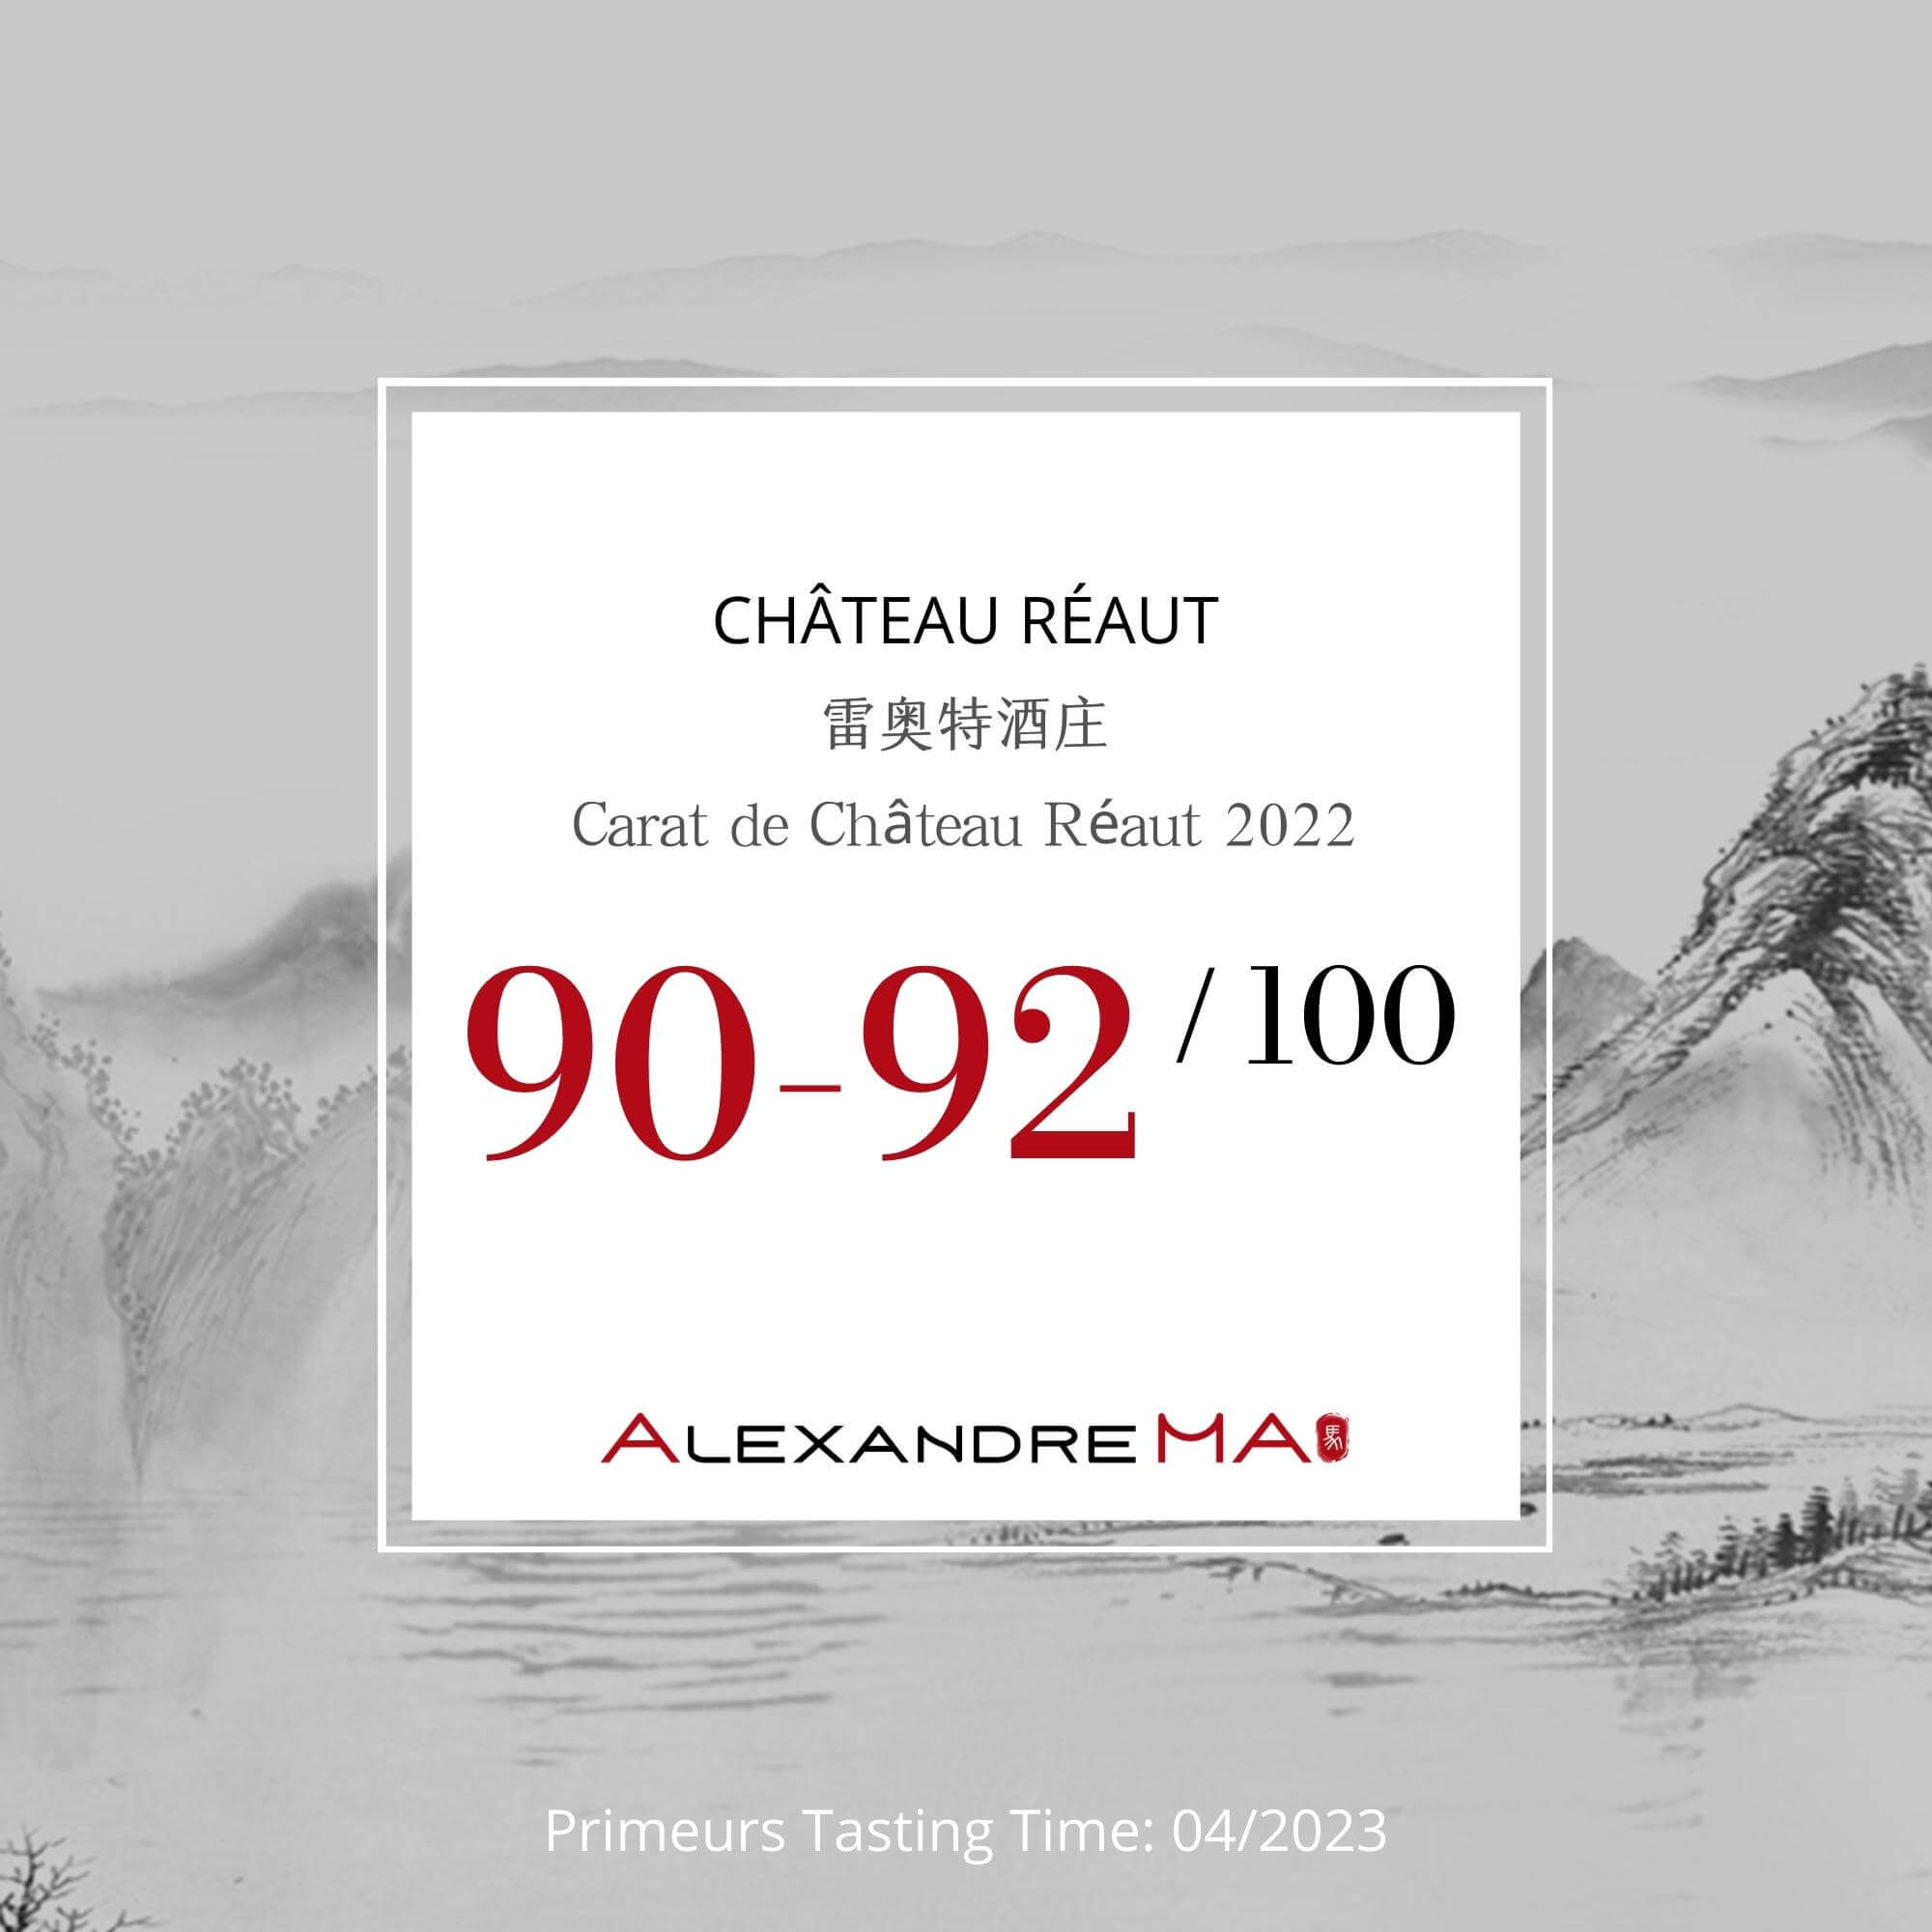 Château Réaut-Carat de Château Réaut 2022 Primeurs 雷奥特酒庄 - Alexandre Ma